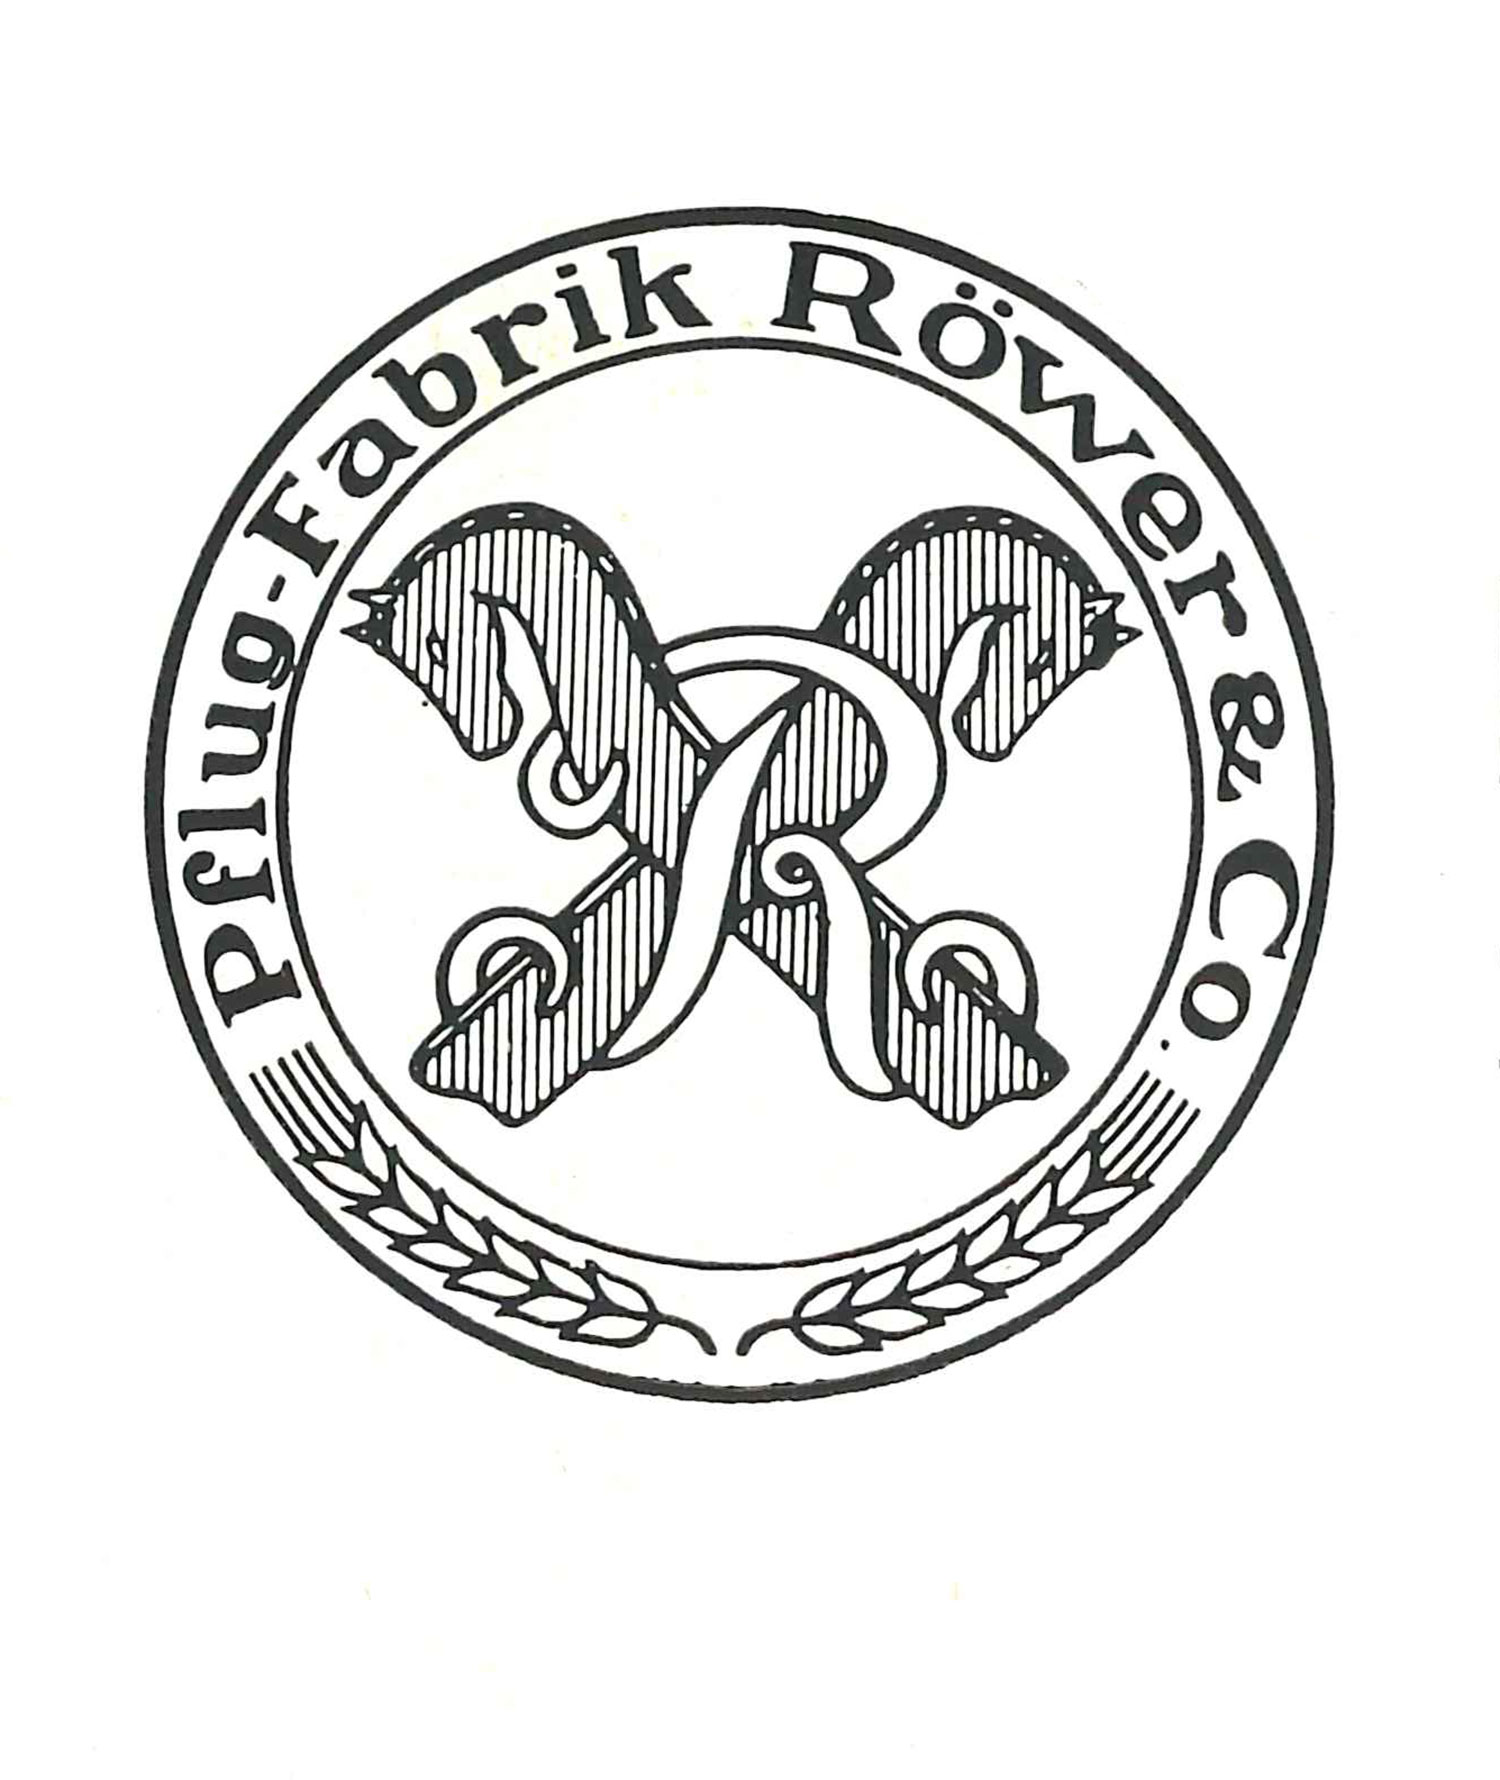 Pflugfabrik Röwer & Co.